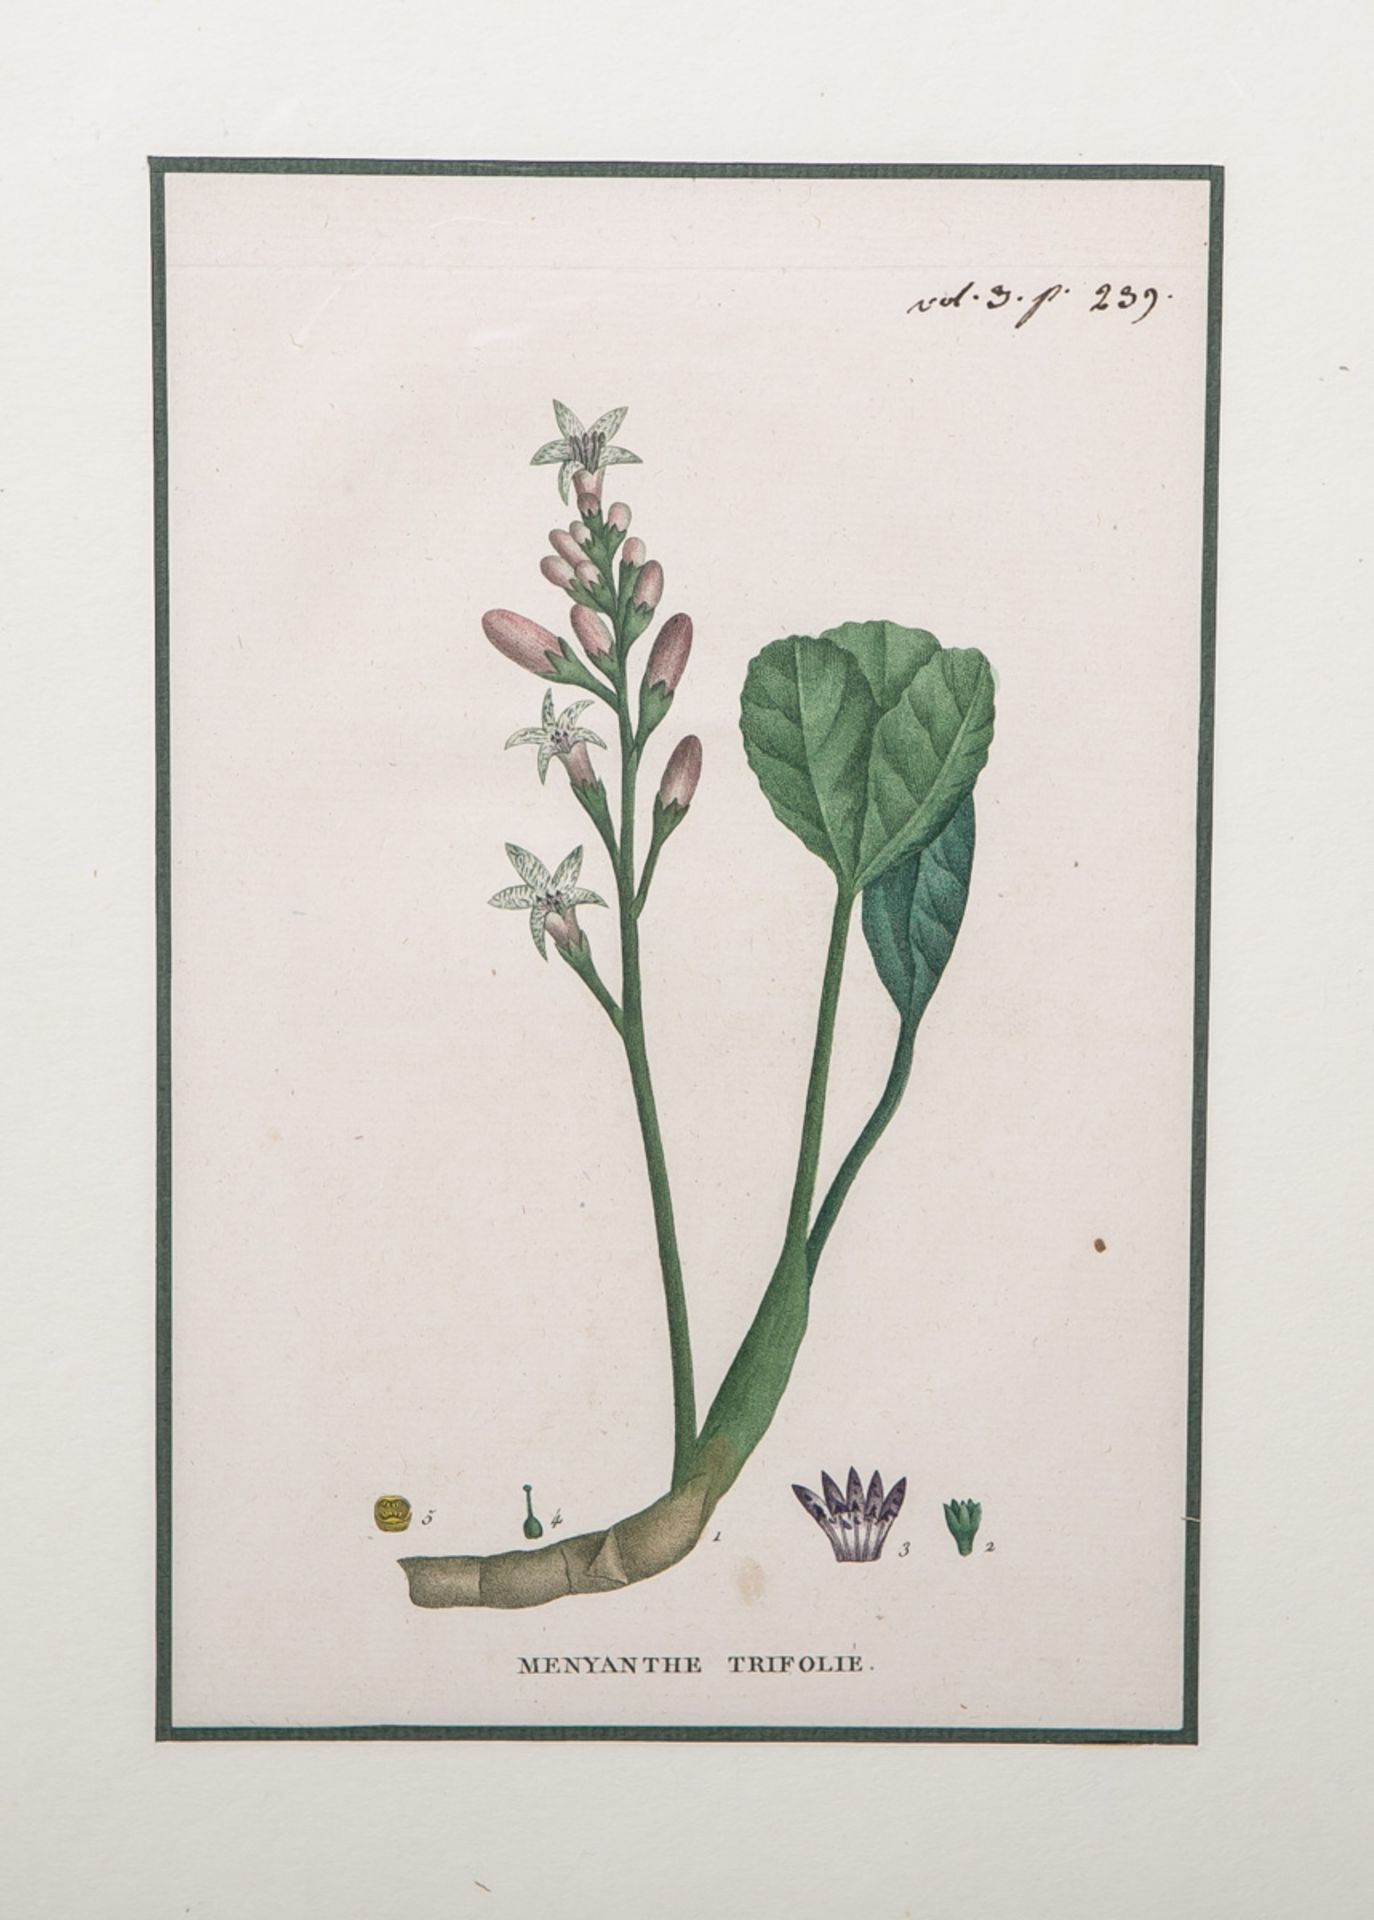 Saint-Hilaire, Jaume (1772 - 1845), "Menyanthe Trifolie" aus "Plantes de la France"